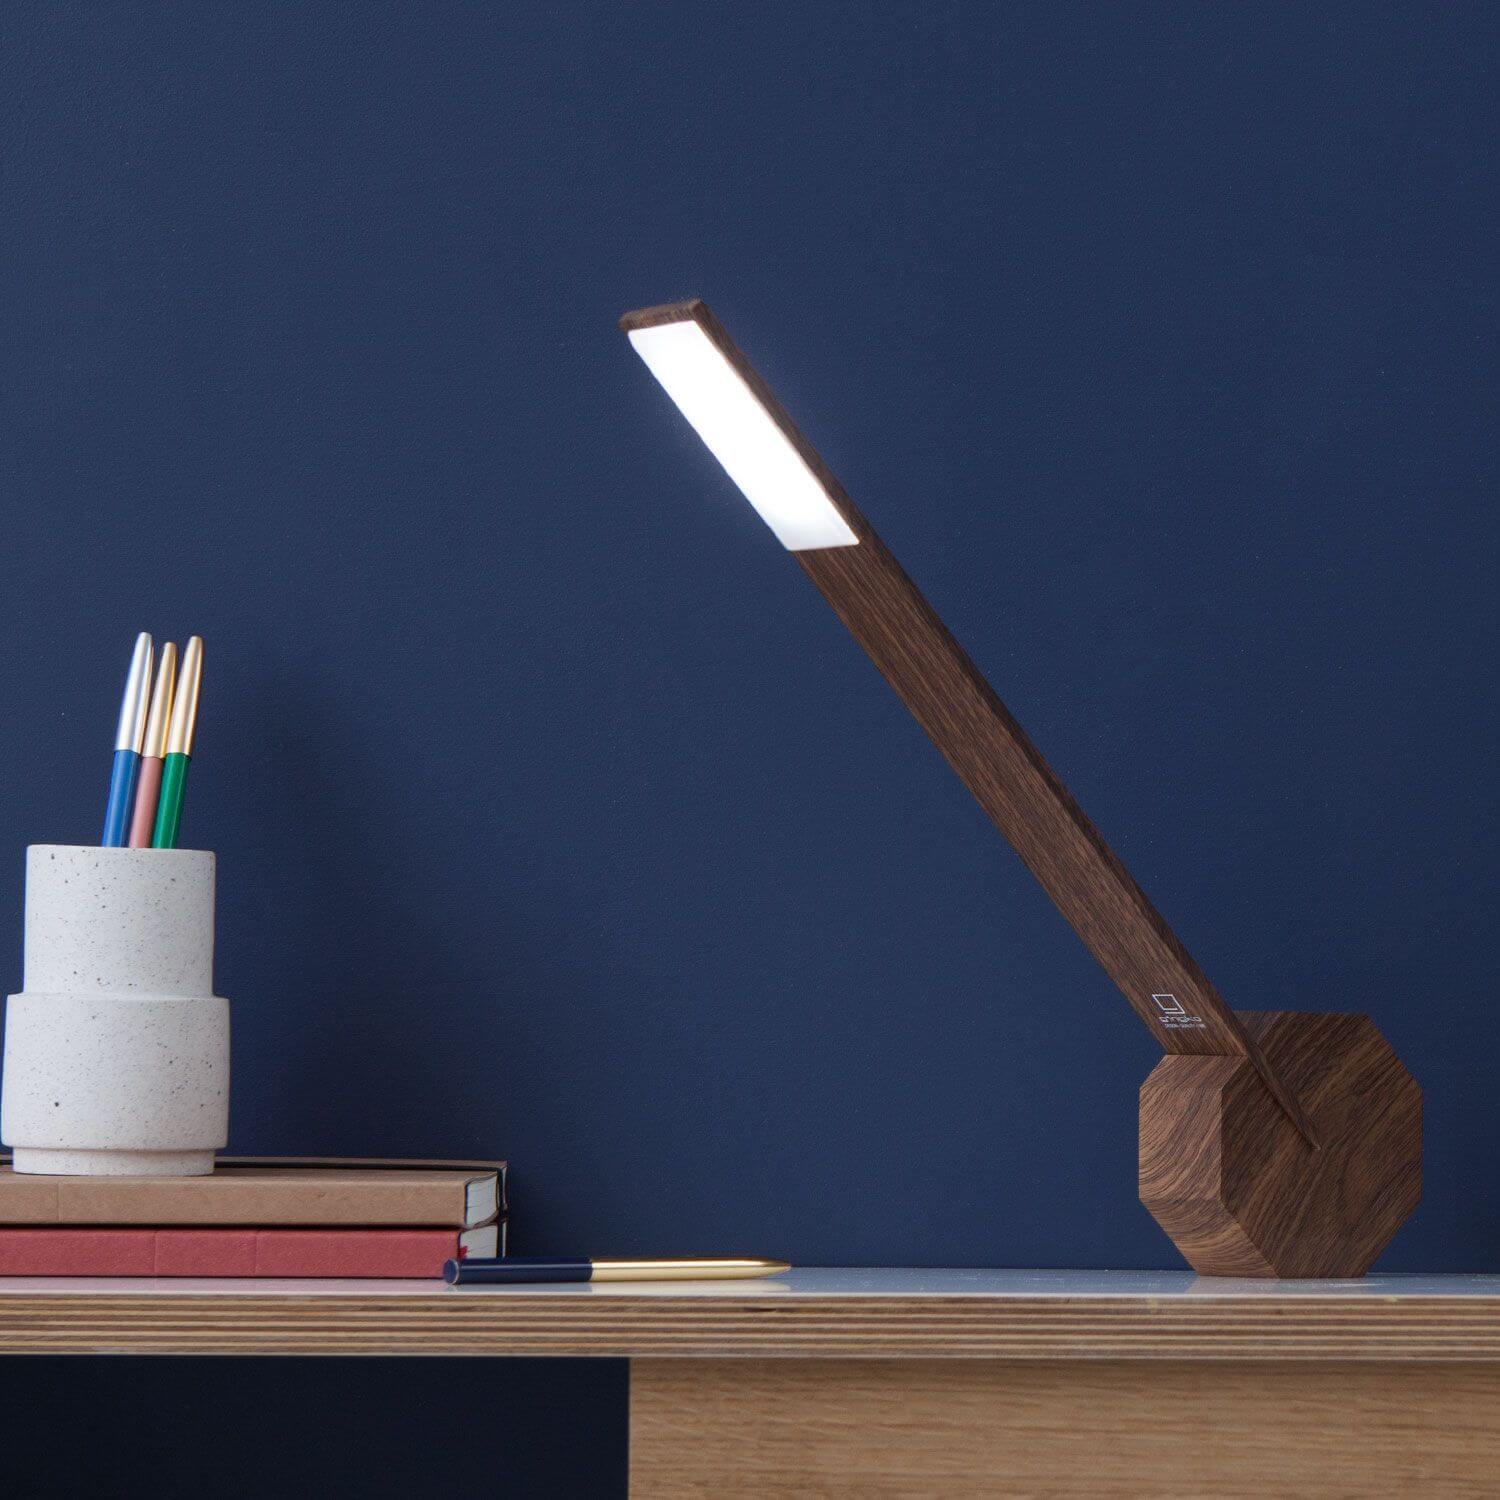 Moodbild einer Tischlampe aus Holz mit Fuß in Form eines Oktagons für eine flexible Nutzung.